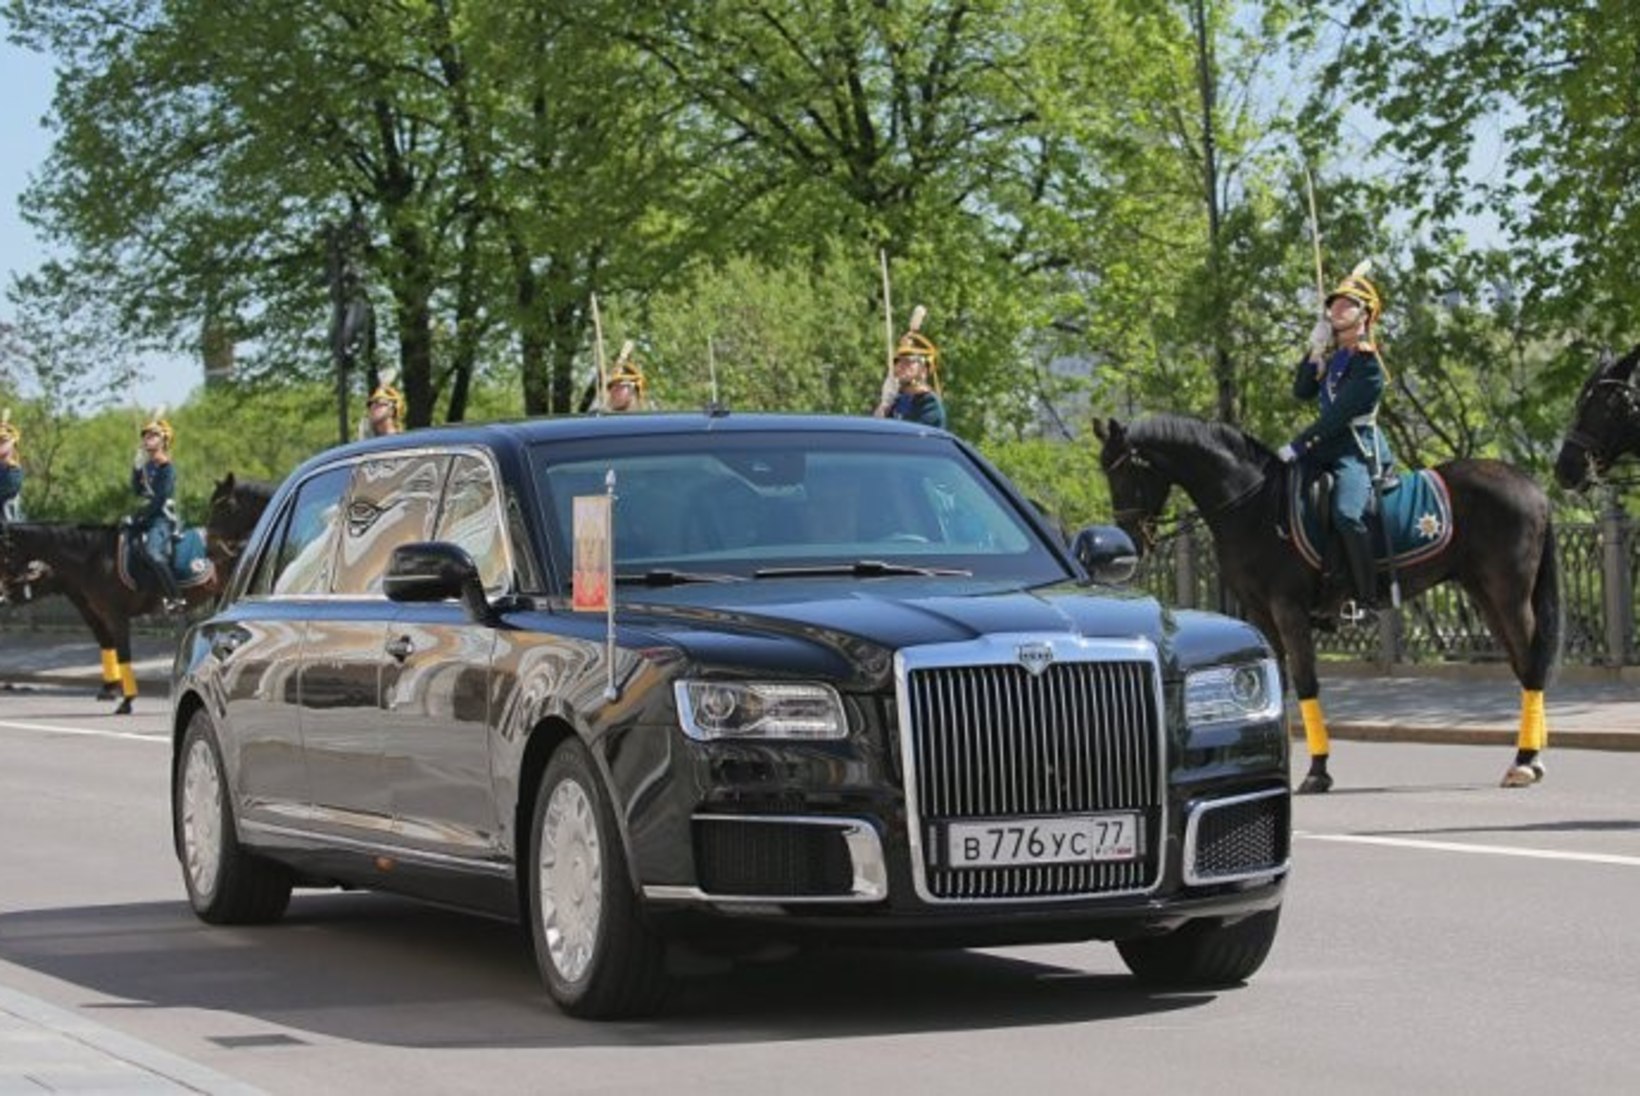 Ja tehtud! President Putin sõitis inaugureerimisele uue Auruse limusiiniga